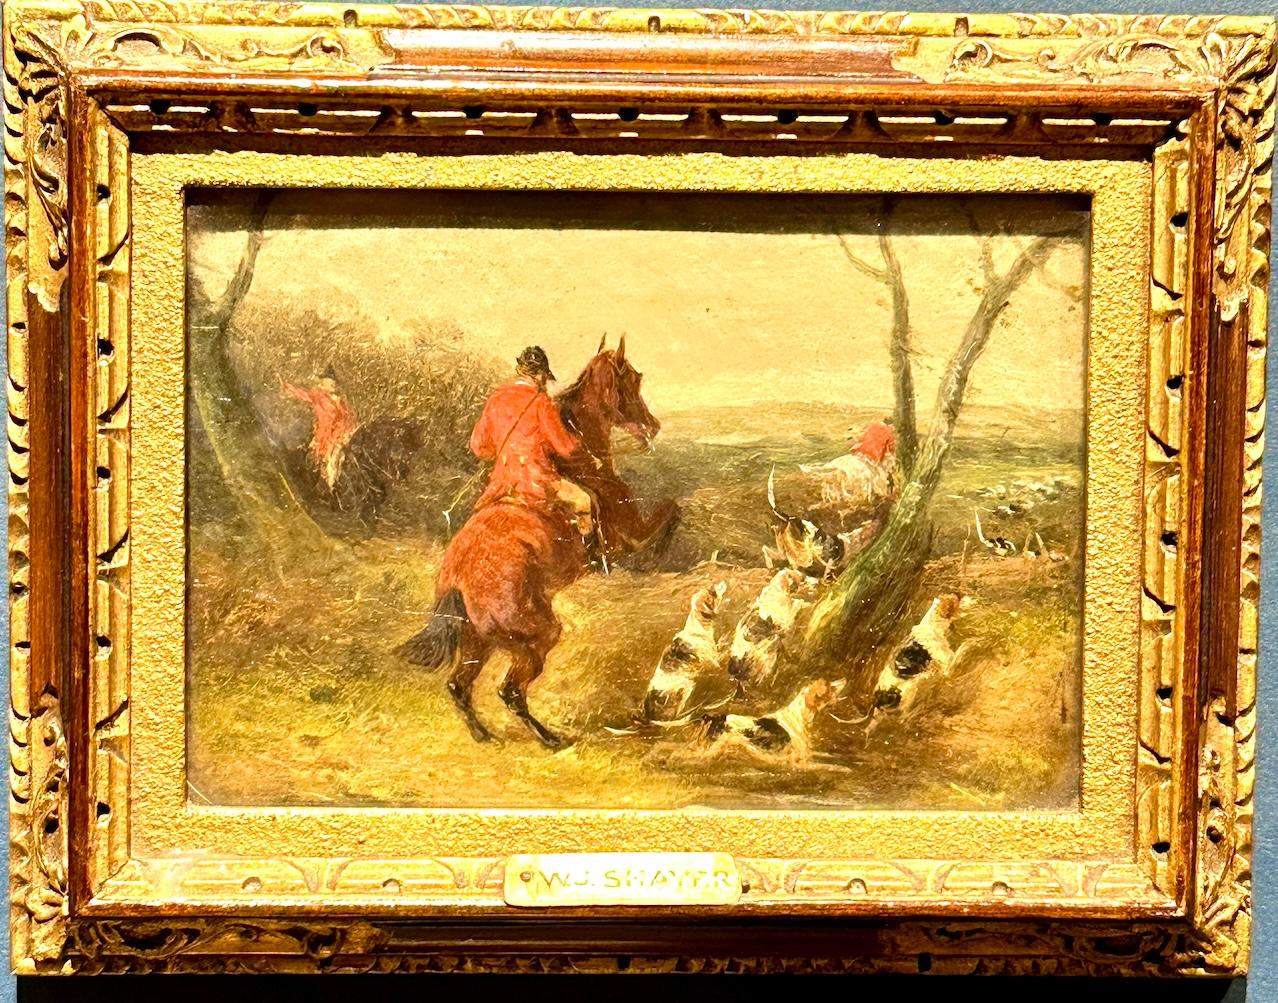 Landscape Painting William Joseph Shayer - Chasseur de renards anglais du 19e siècle sur son cheval, huile dans un paysage avec des chiens de chasse